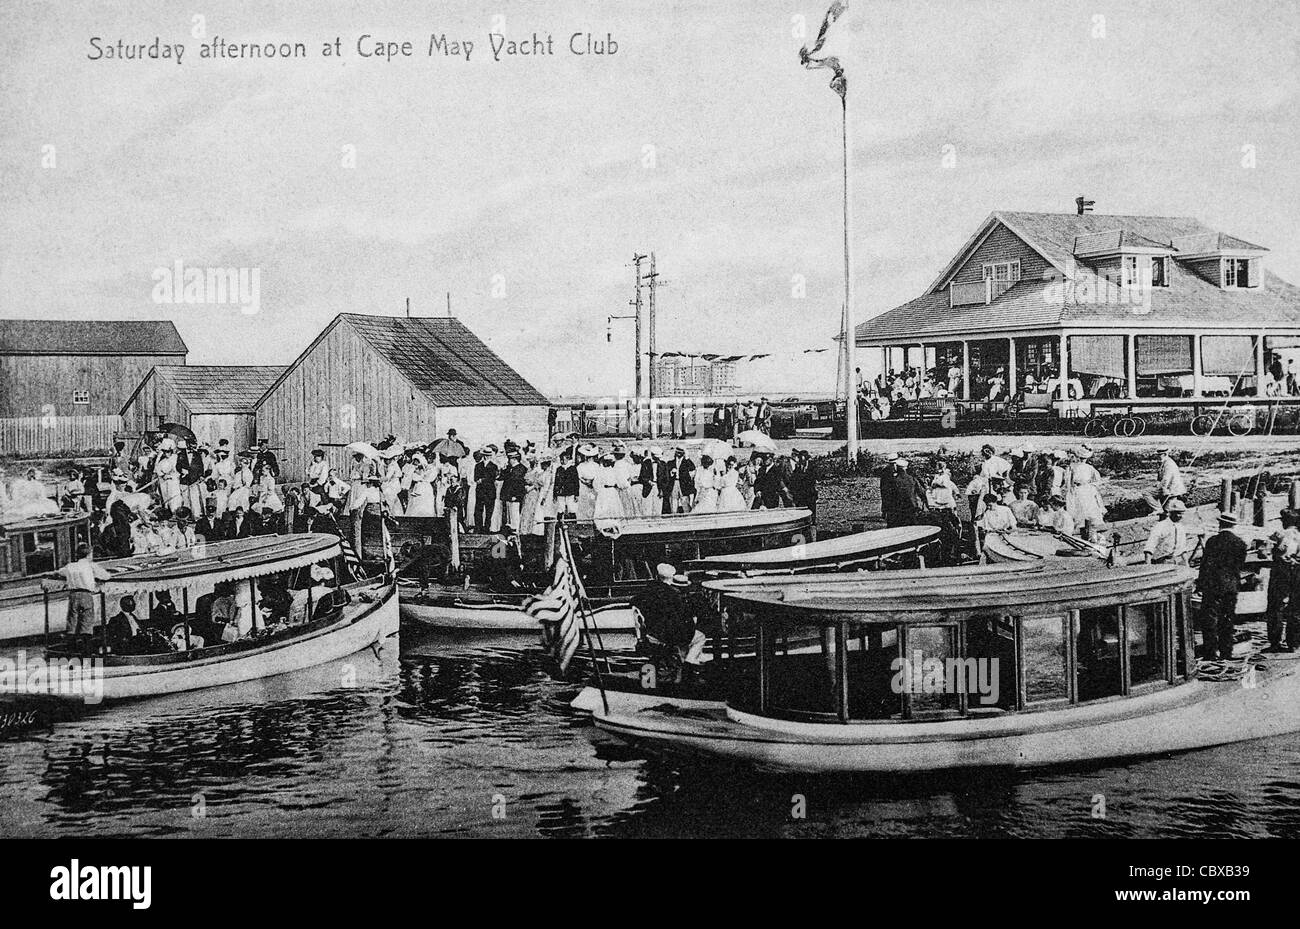 Dimanche après-midi à Cape May Yacht Club, Cape May, NJ vers 1920 Banque D'Images